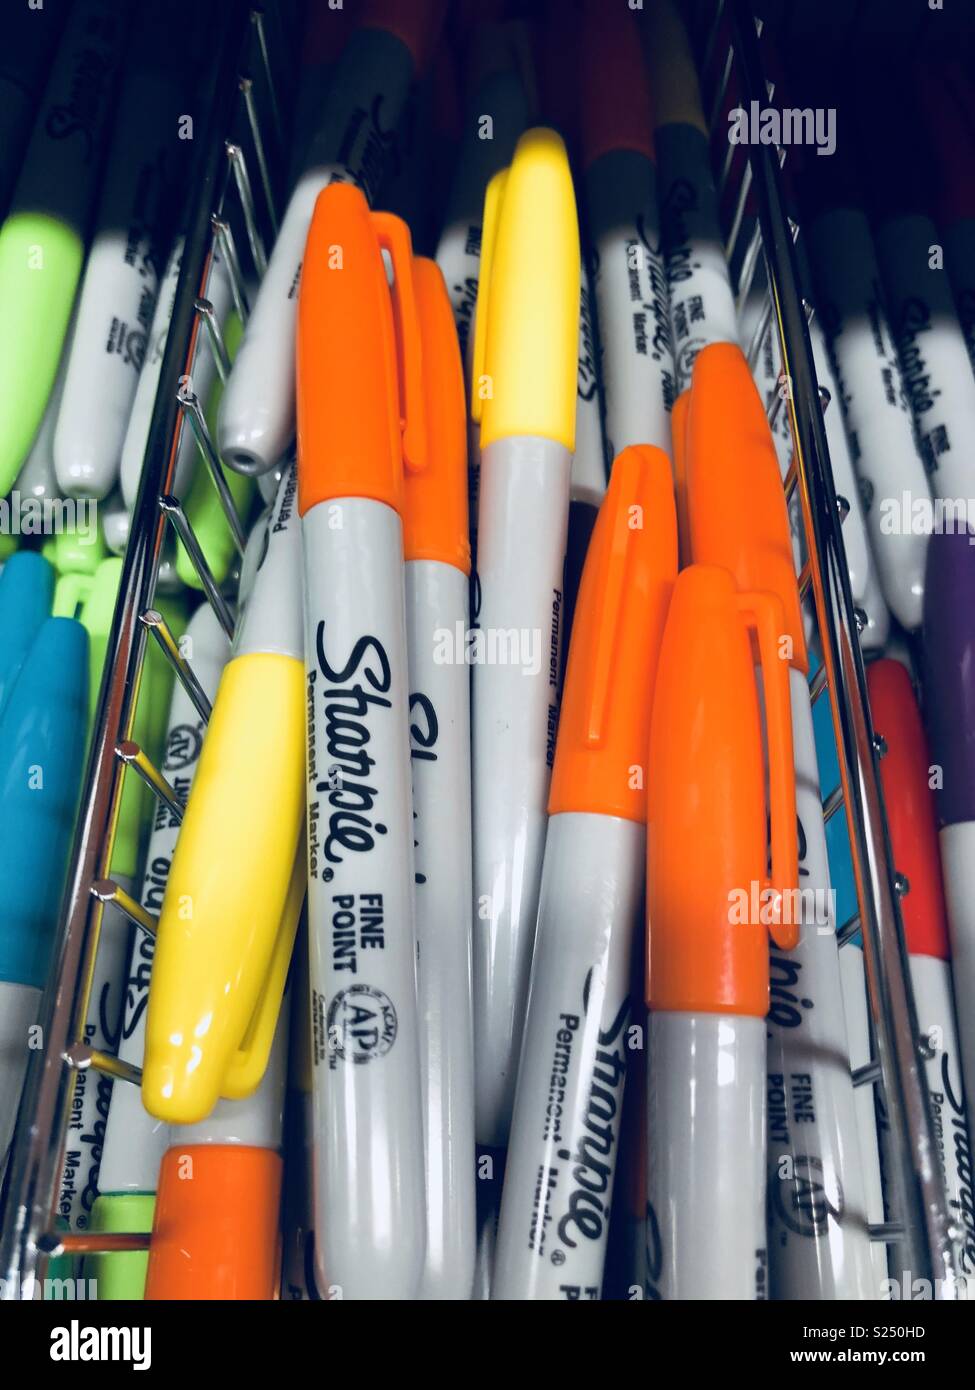 Papeterie un tiroir plein de stylos sharpie de couleurs différentes Banque D'Images